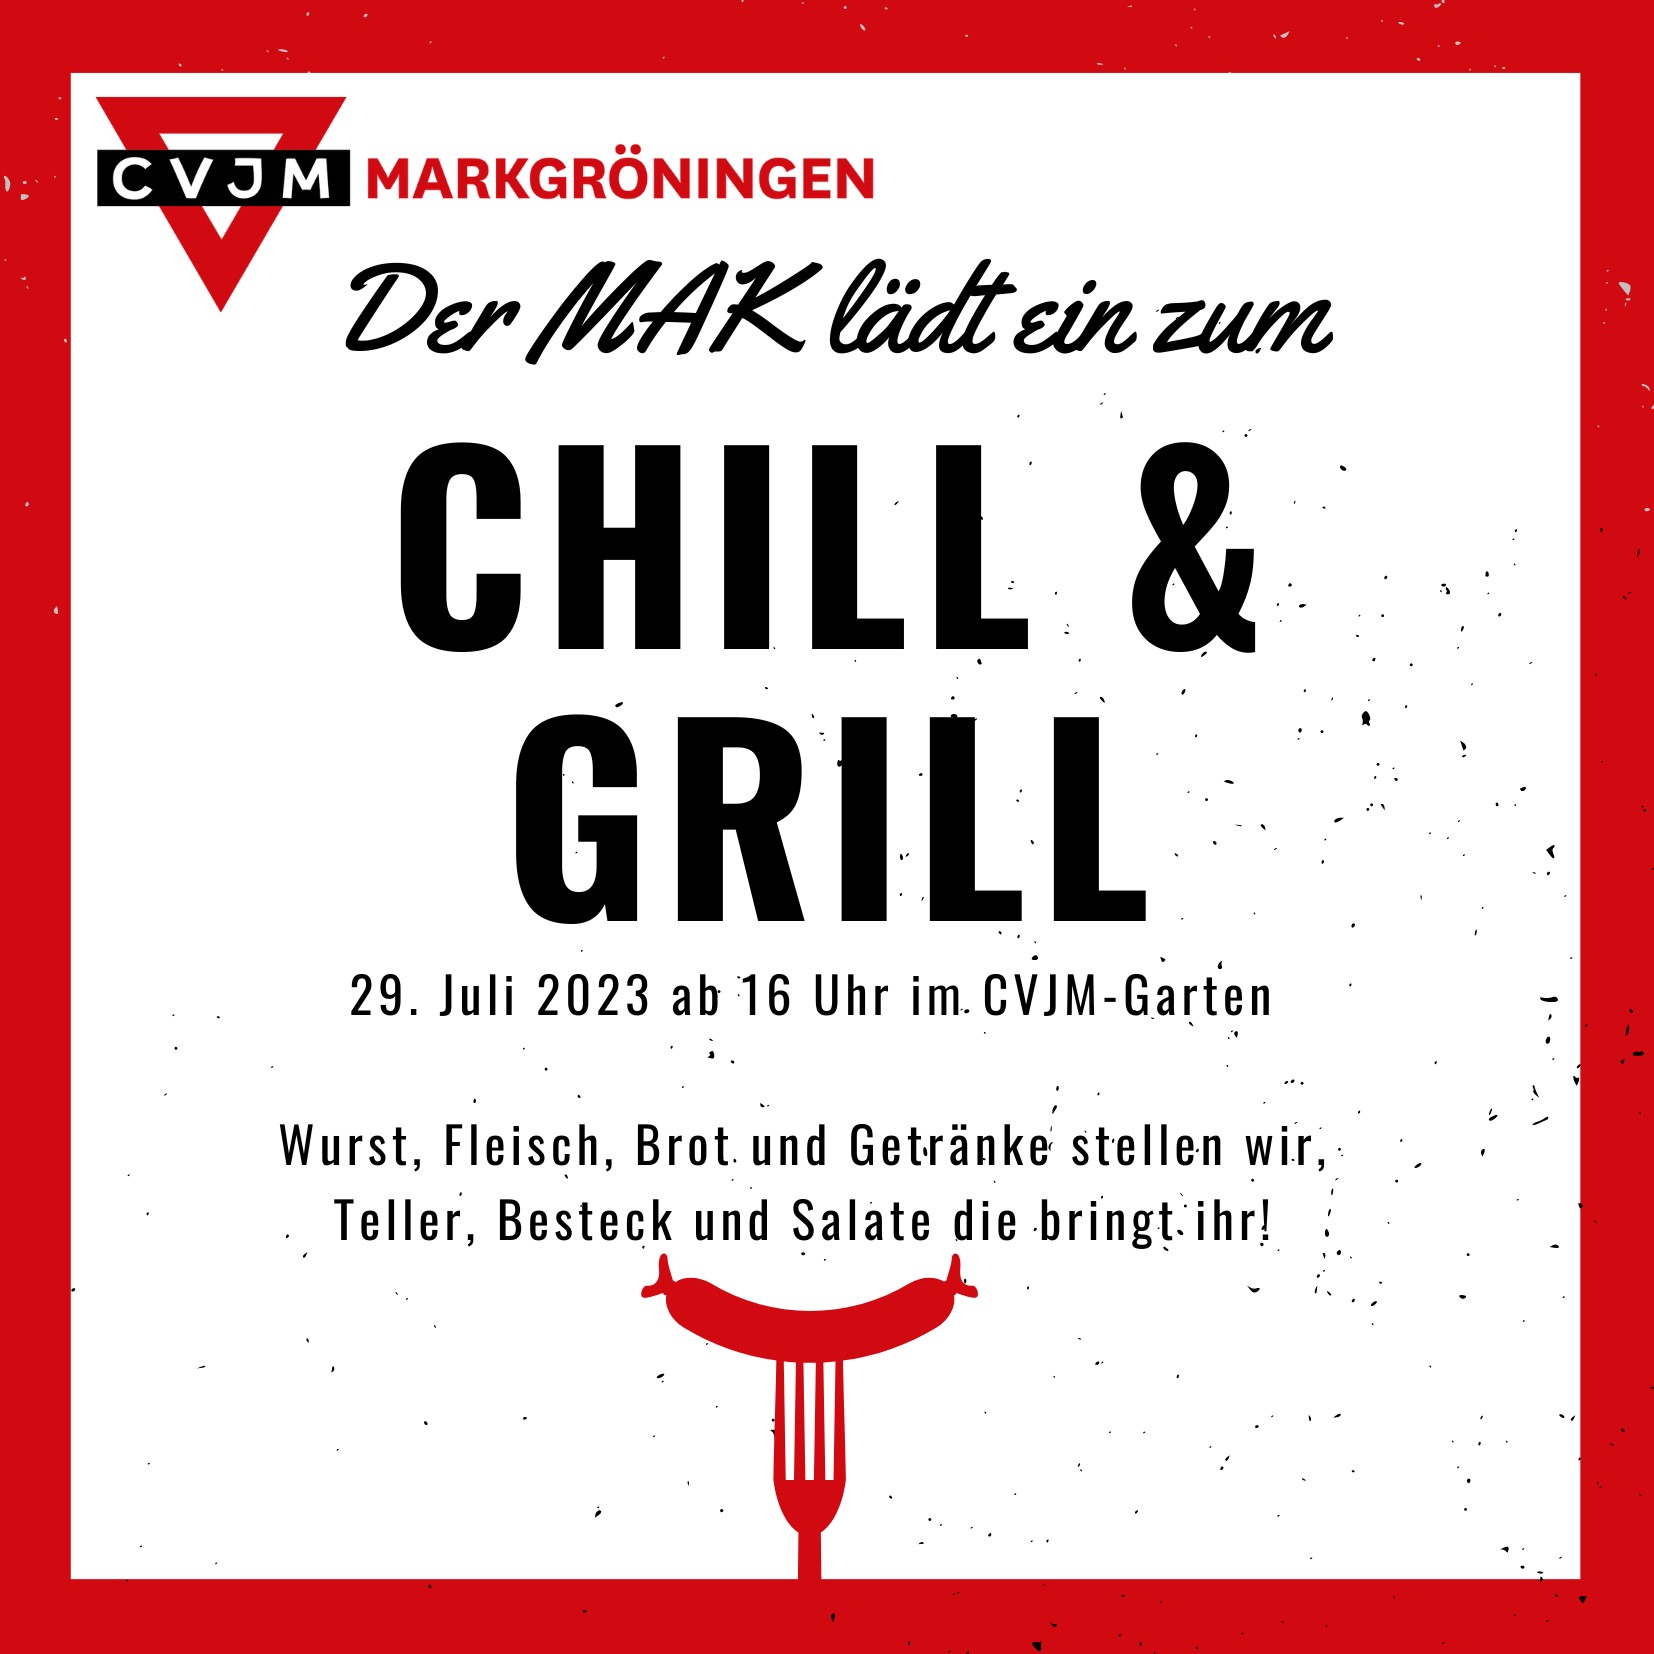 MAK Chill & Grill am 29. Juli 2023